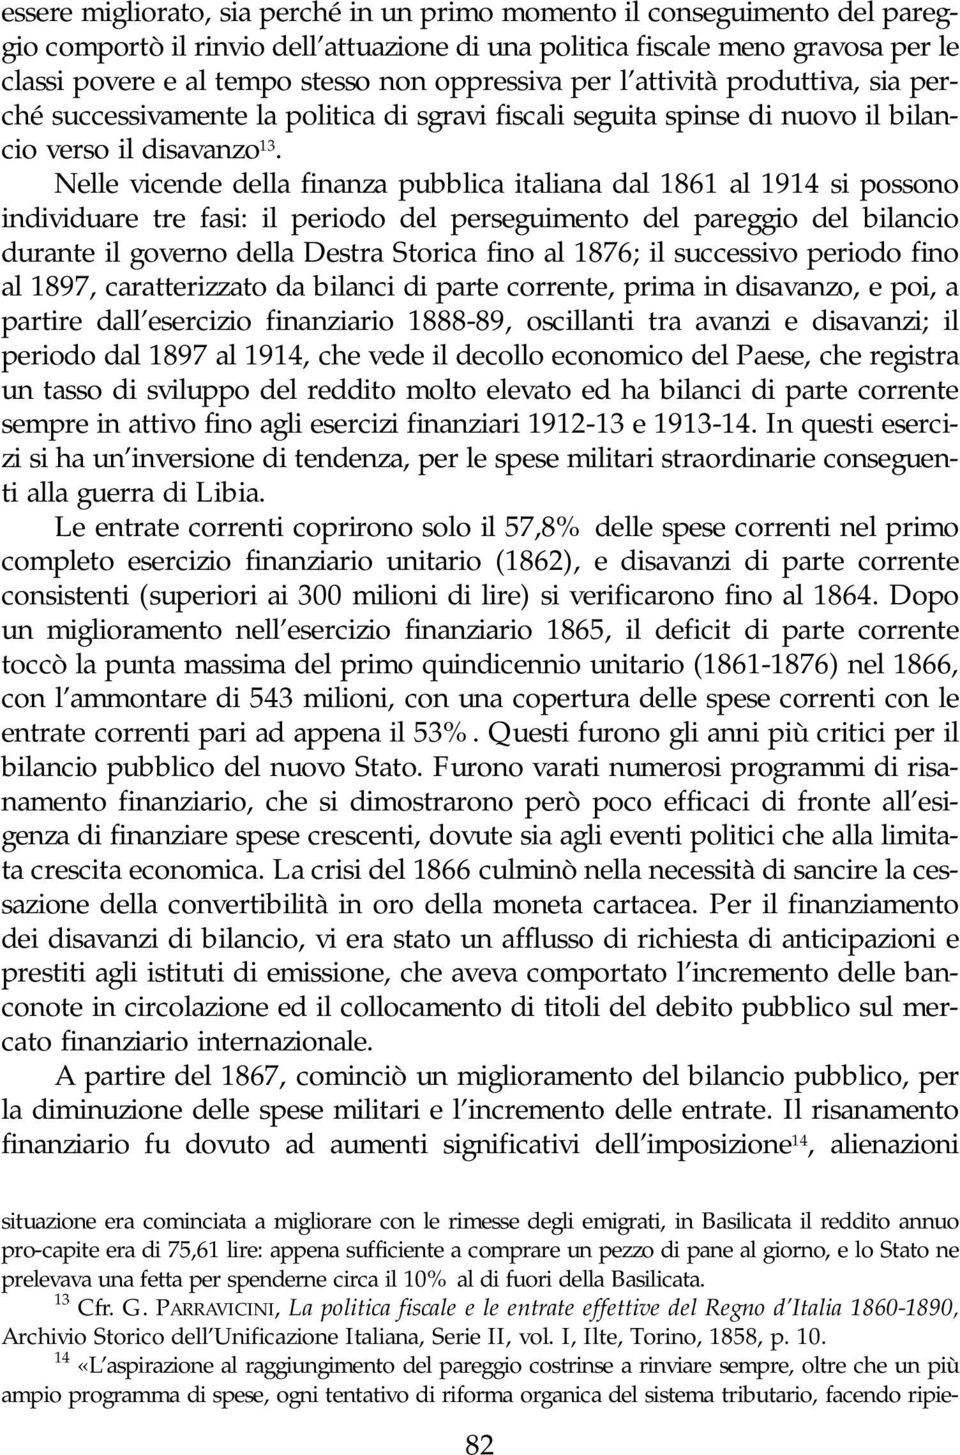 Nelle vicende della finanza pubblica italiana dal 1861 al 1914 si possono individuare tre fasi: il periodo del perseguimento del pareggio del bilancio durante il governo della Destra Storica fino al